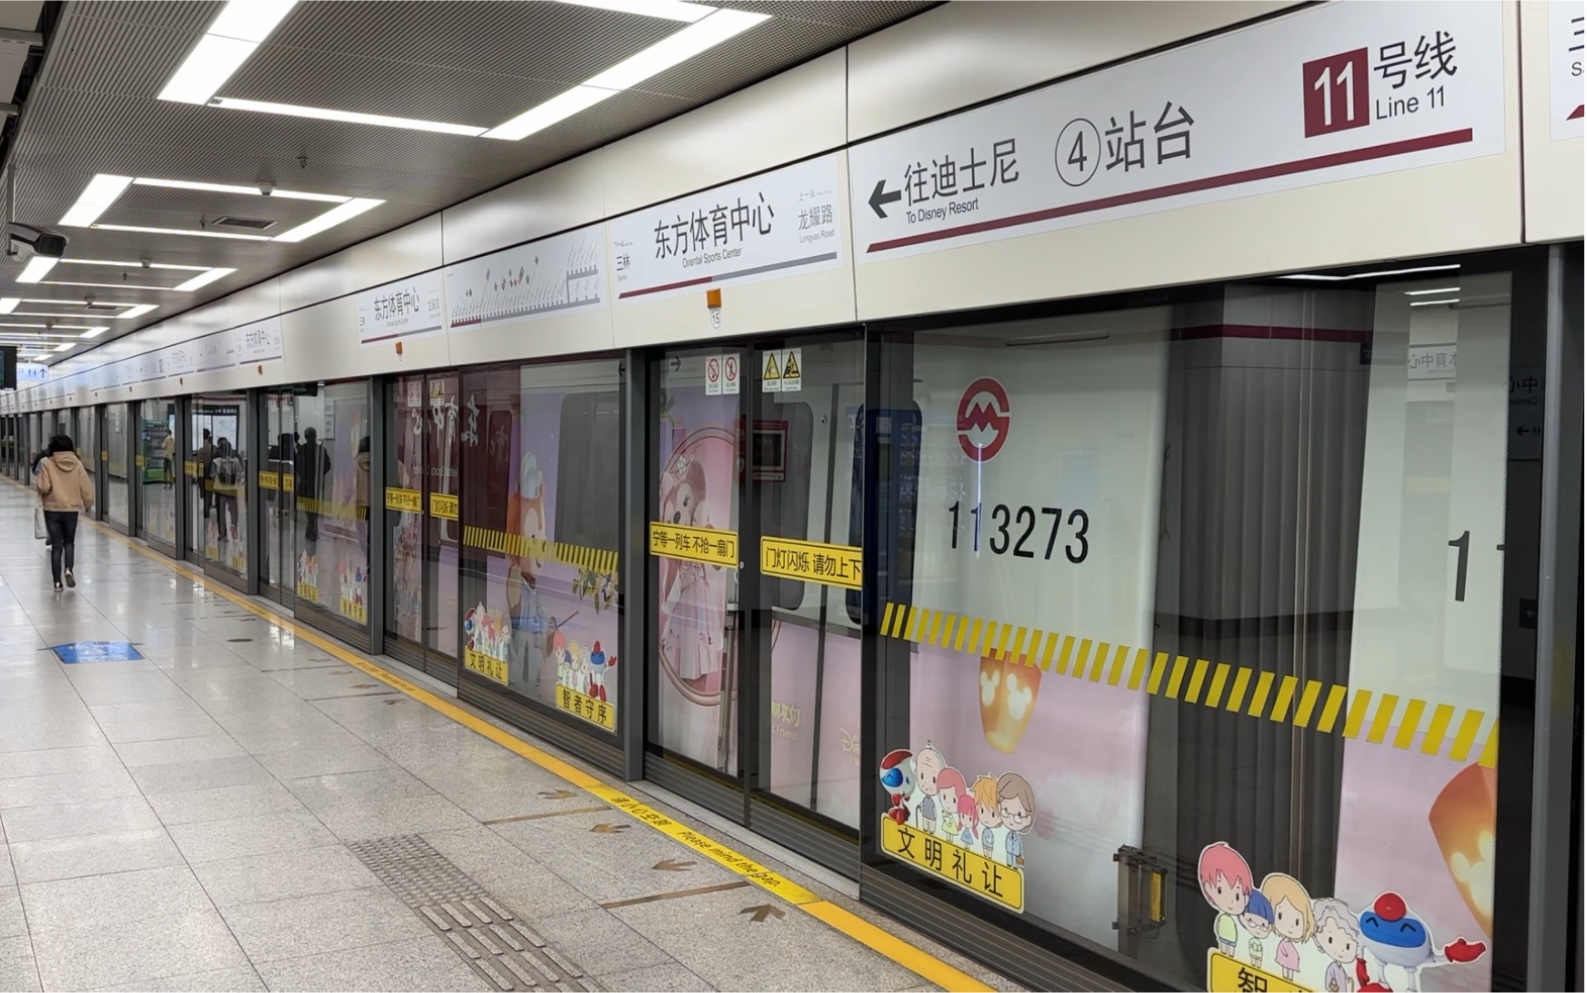 【上海地铁】11号线迪士尼专列1156号车东方体育中心出站开往迪士尼